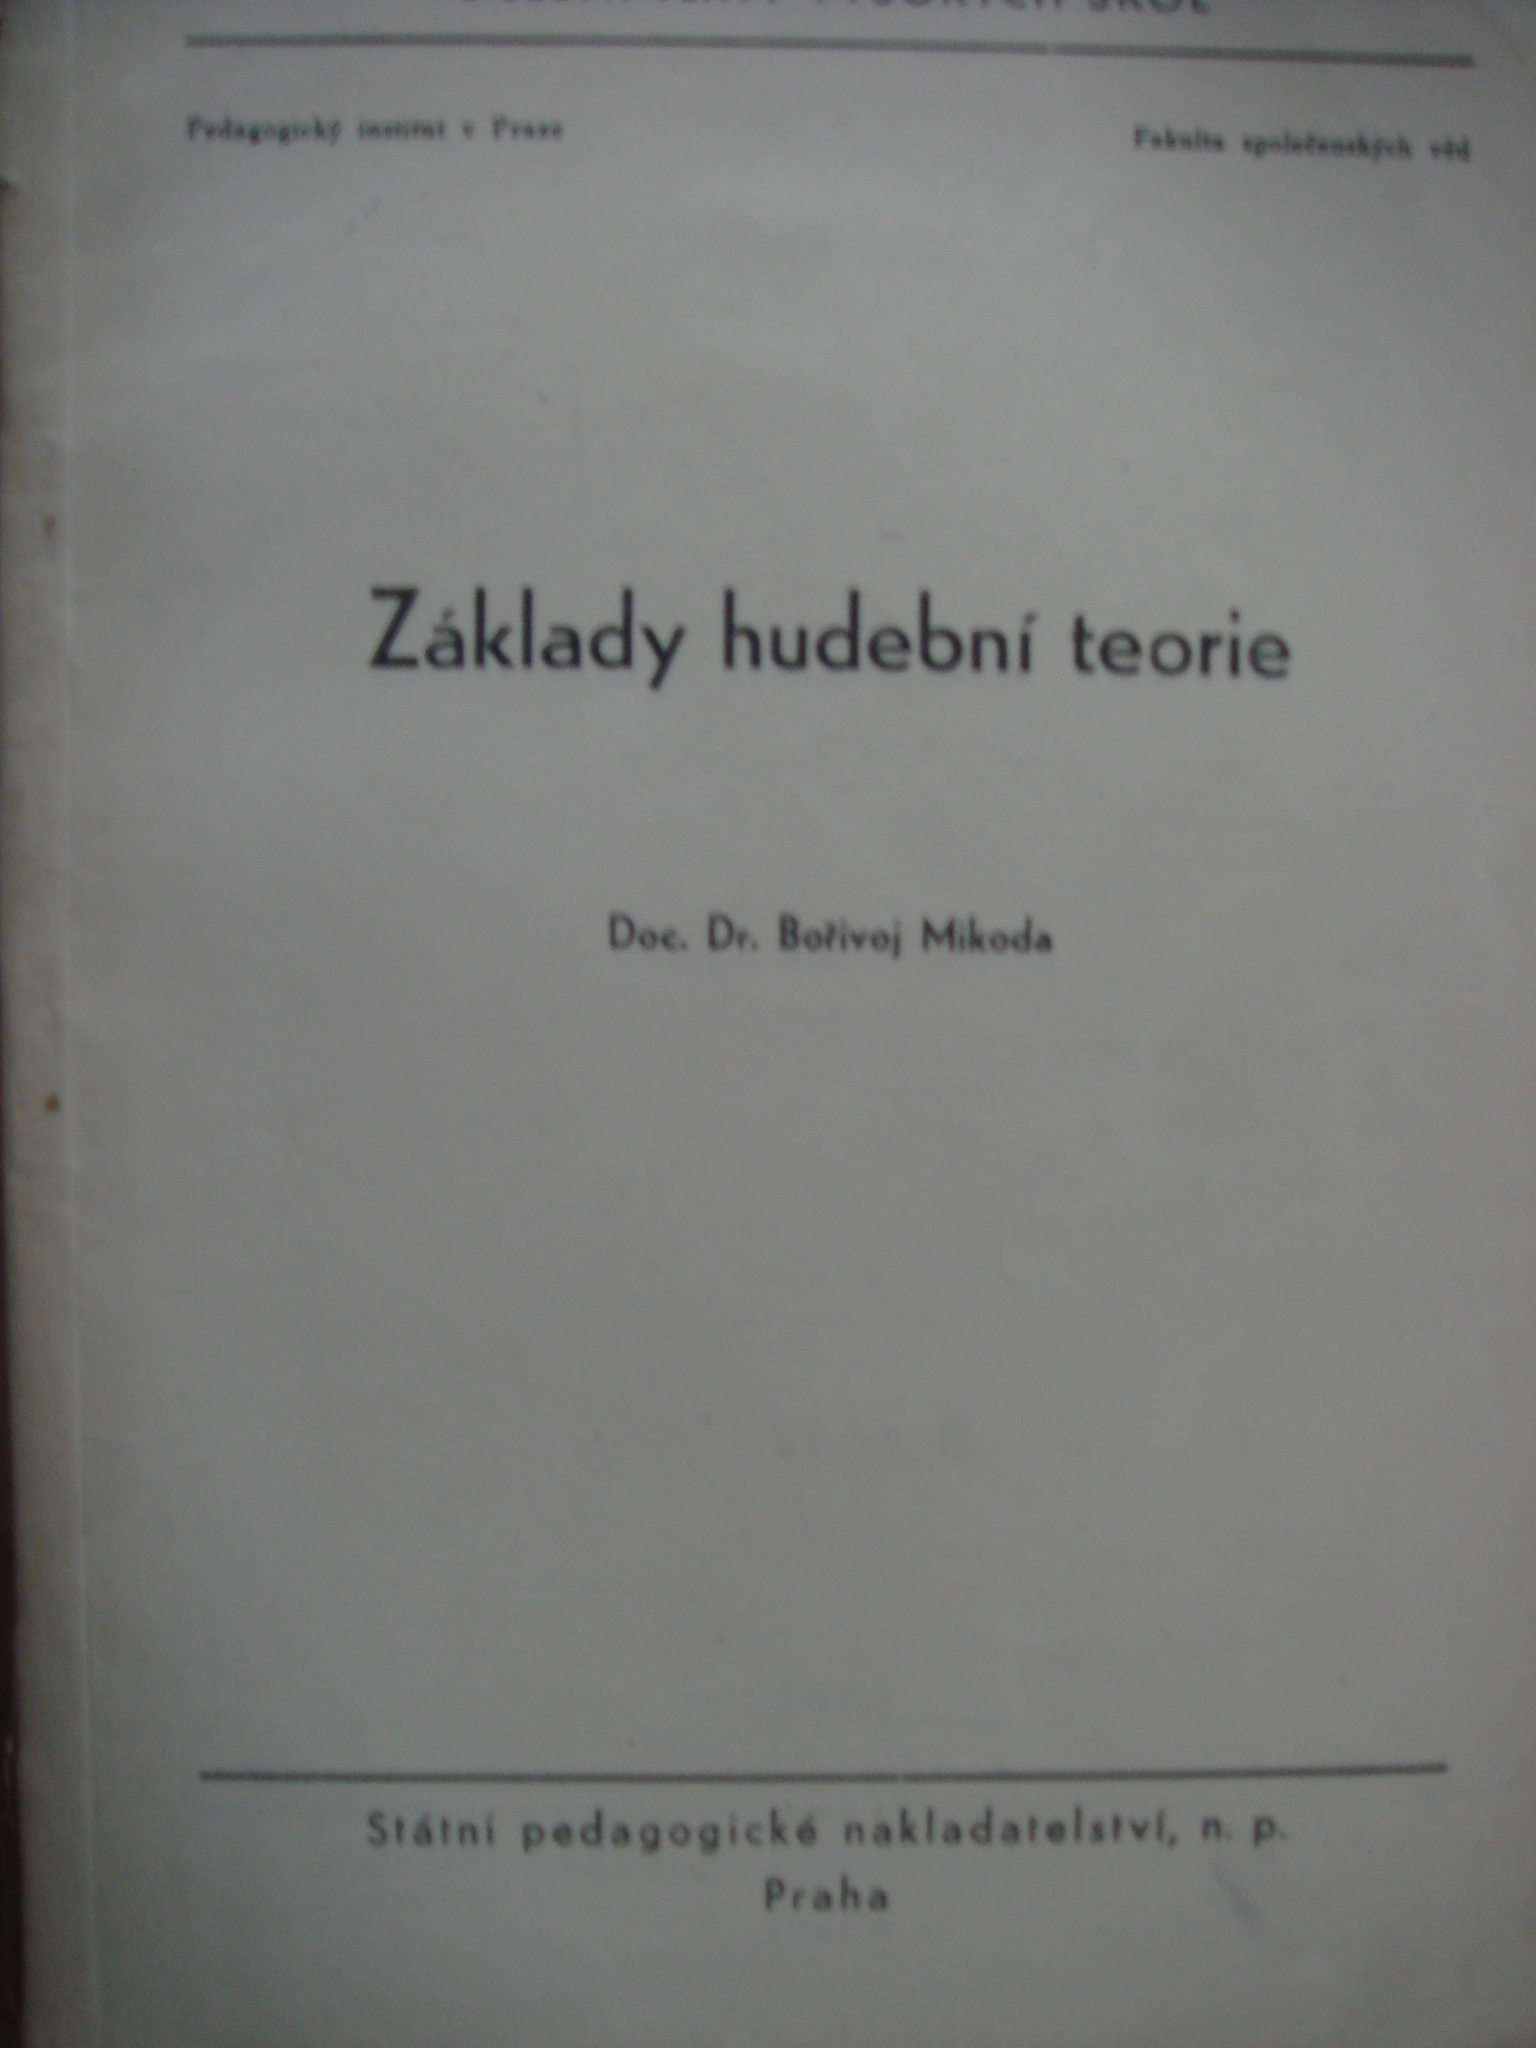 zobrazit detail knihy Mikoda, Boivoj: Zklady hudebn teorie 